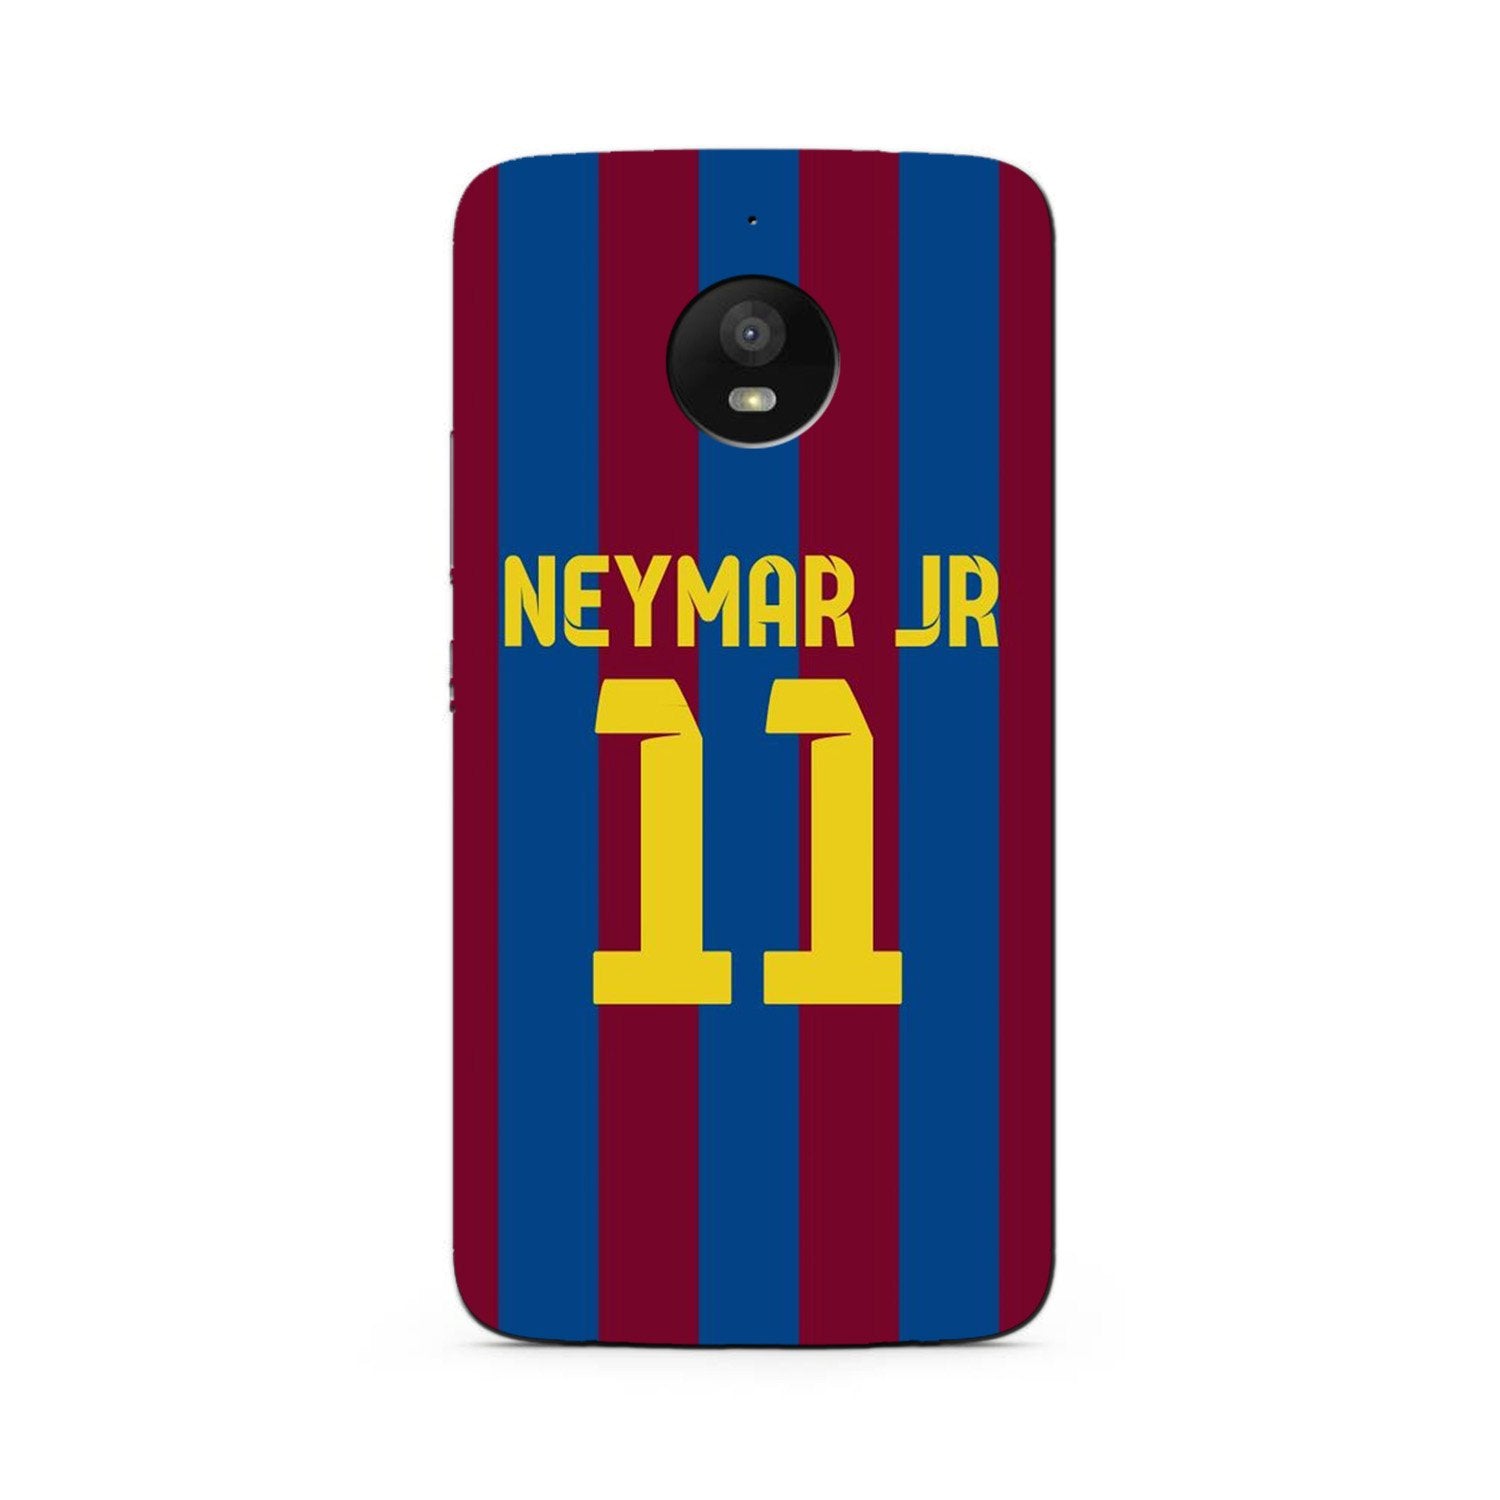 Neymar Jr Case for Moto G5s  (Design - 162)